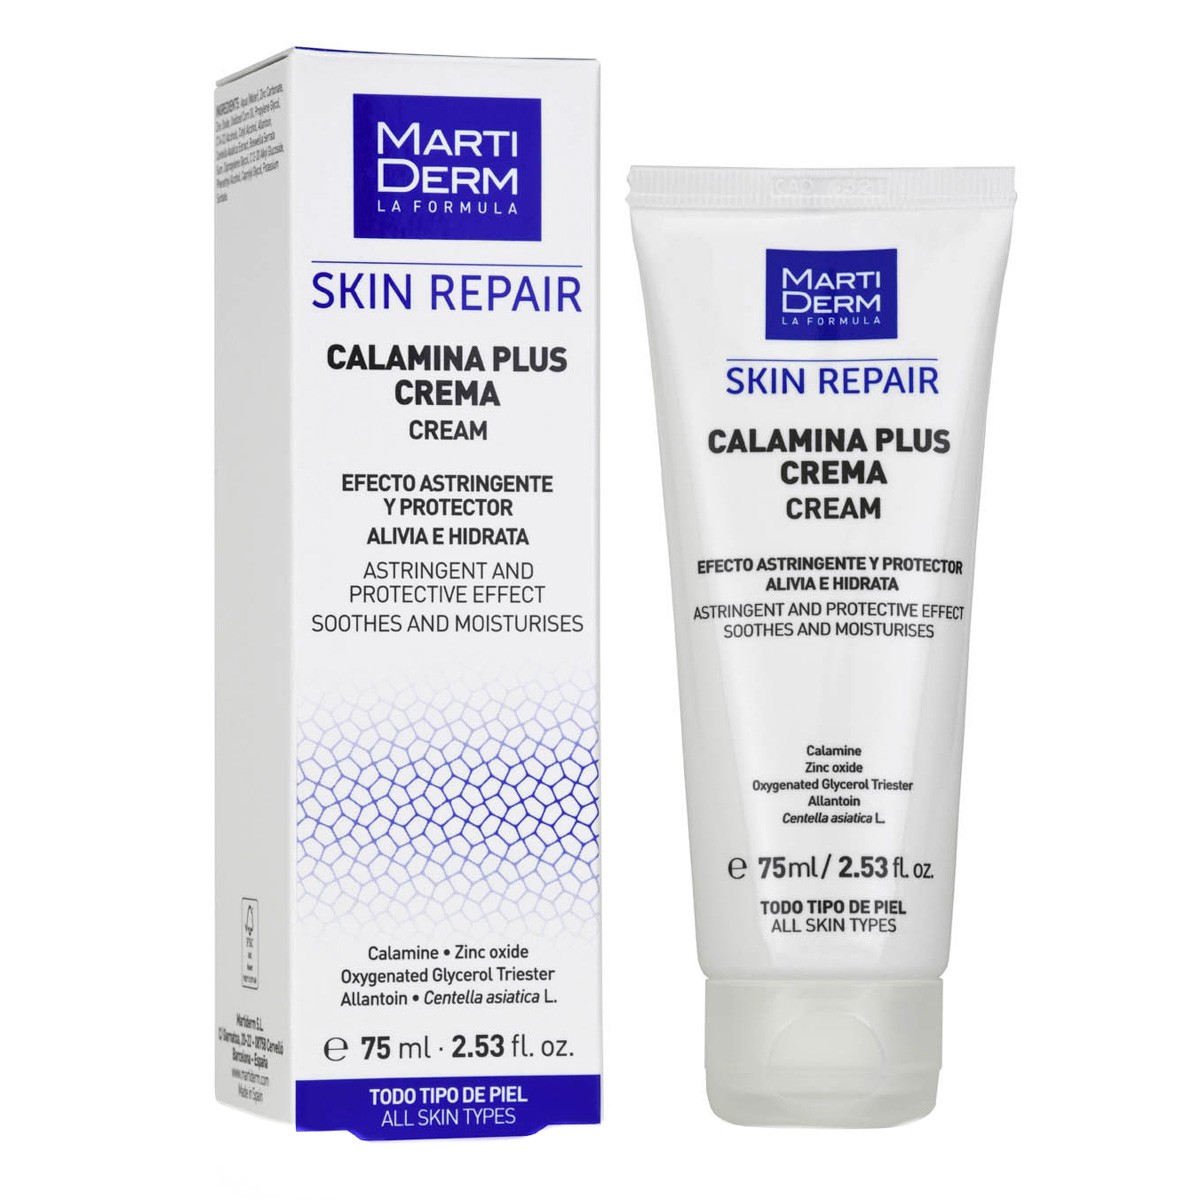 MartiDerm Skin Repair Calamina Plus Crema 75 ml